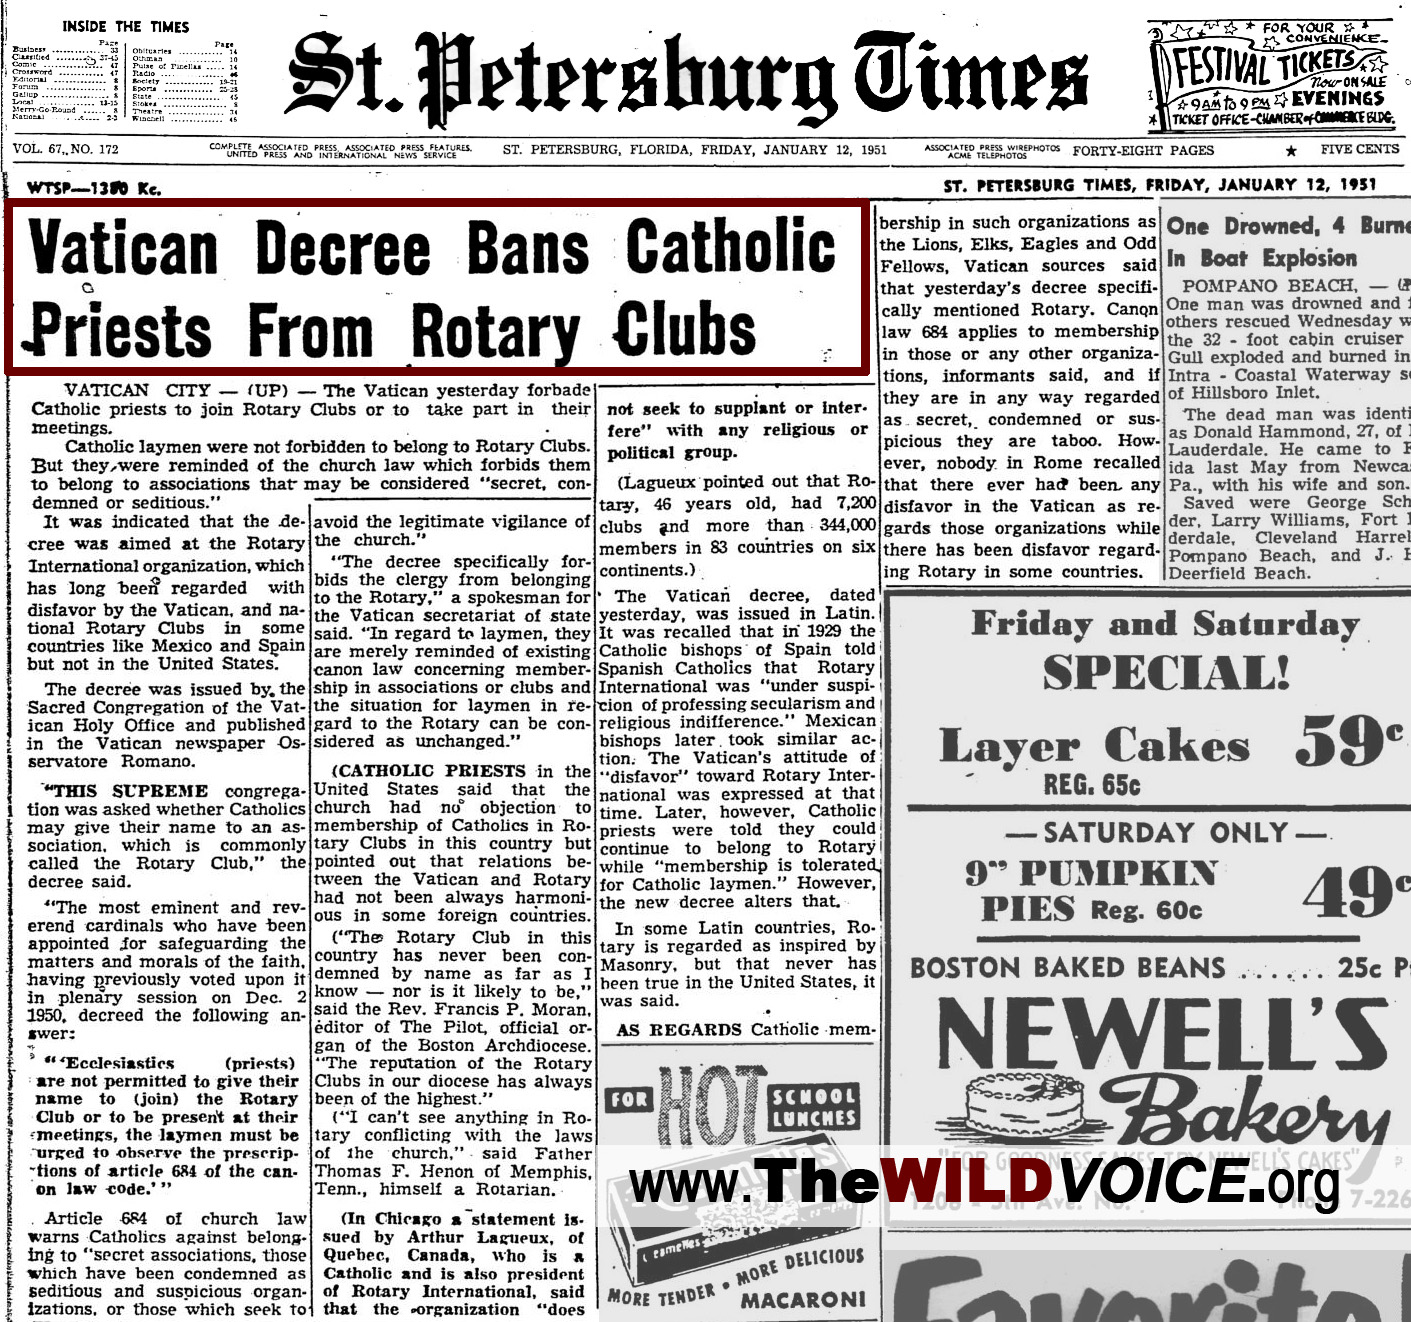 Vatican Decree